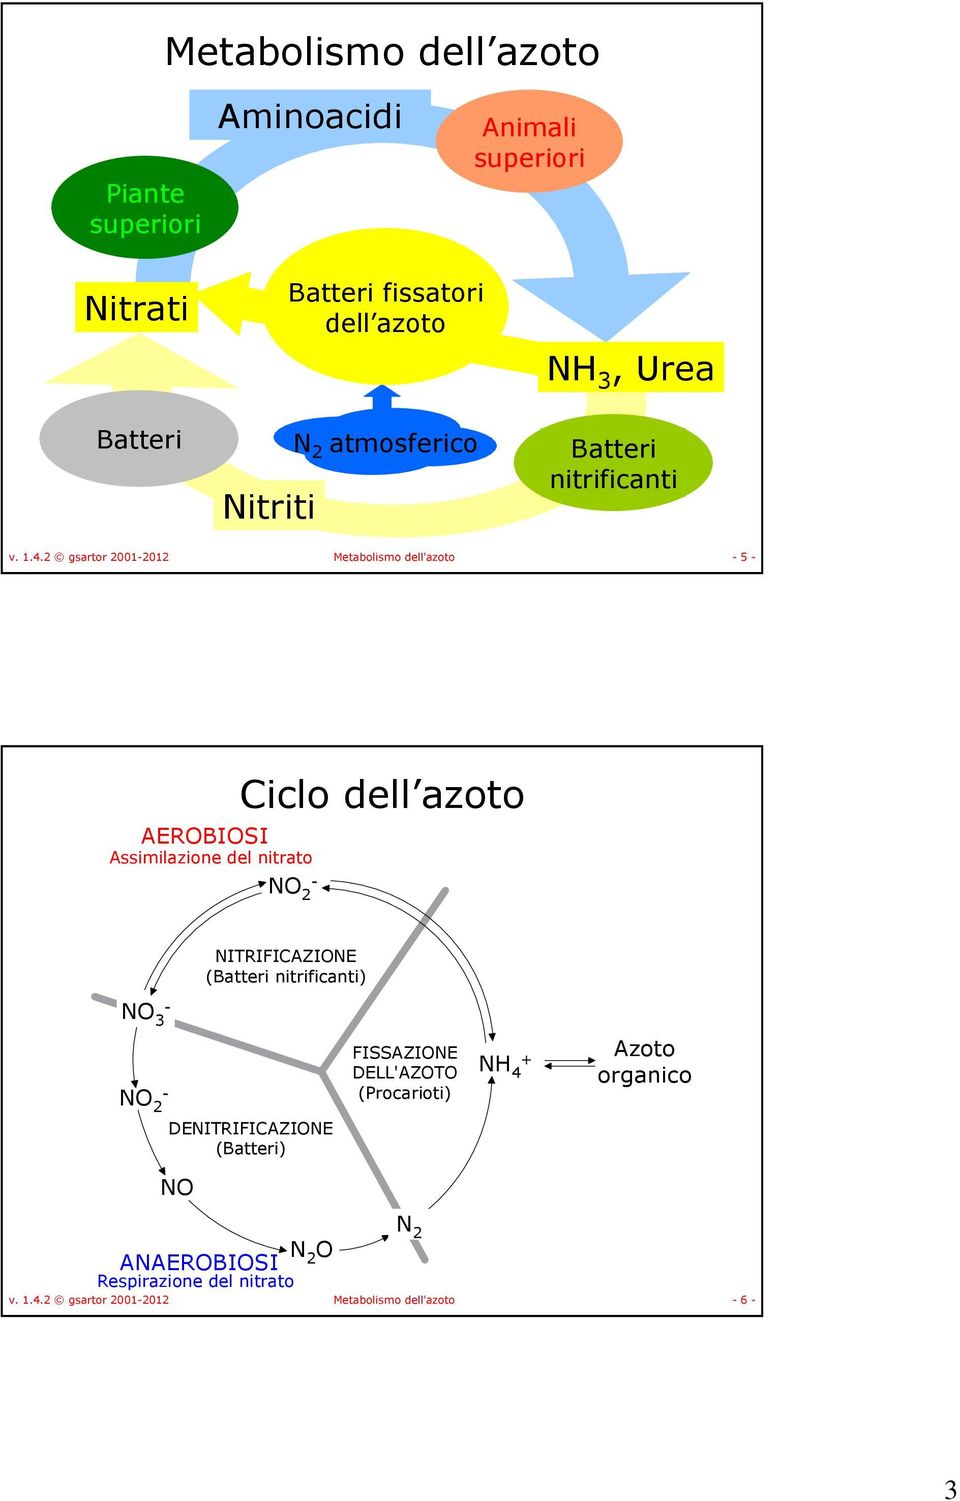 2 gsartor 2001-2012 Metabolismo dell'azoto - 5 - AERBISI Assimilazione del nitrato - 2 Ciclo dell azoto ITRIFICAZIE